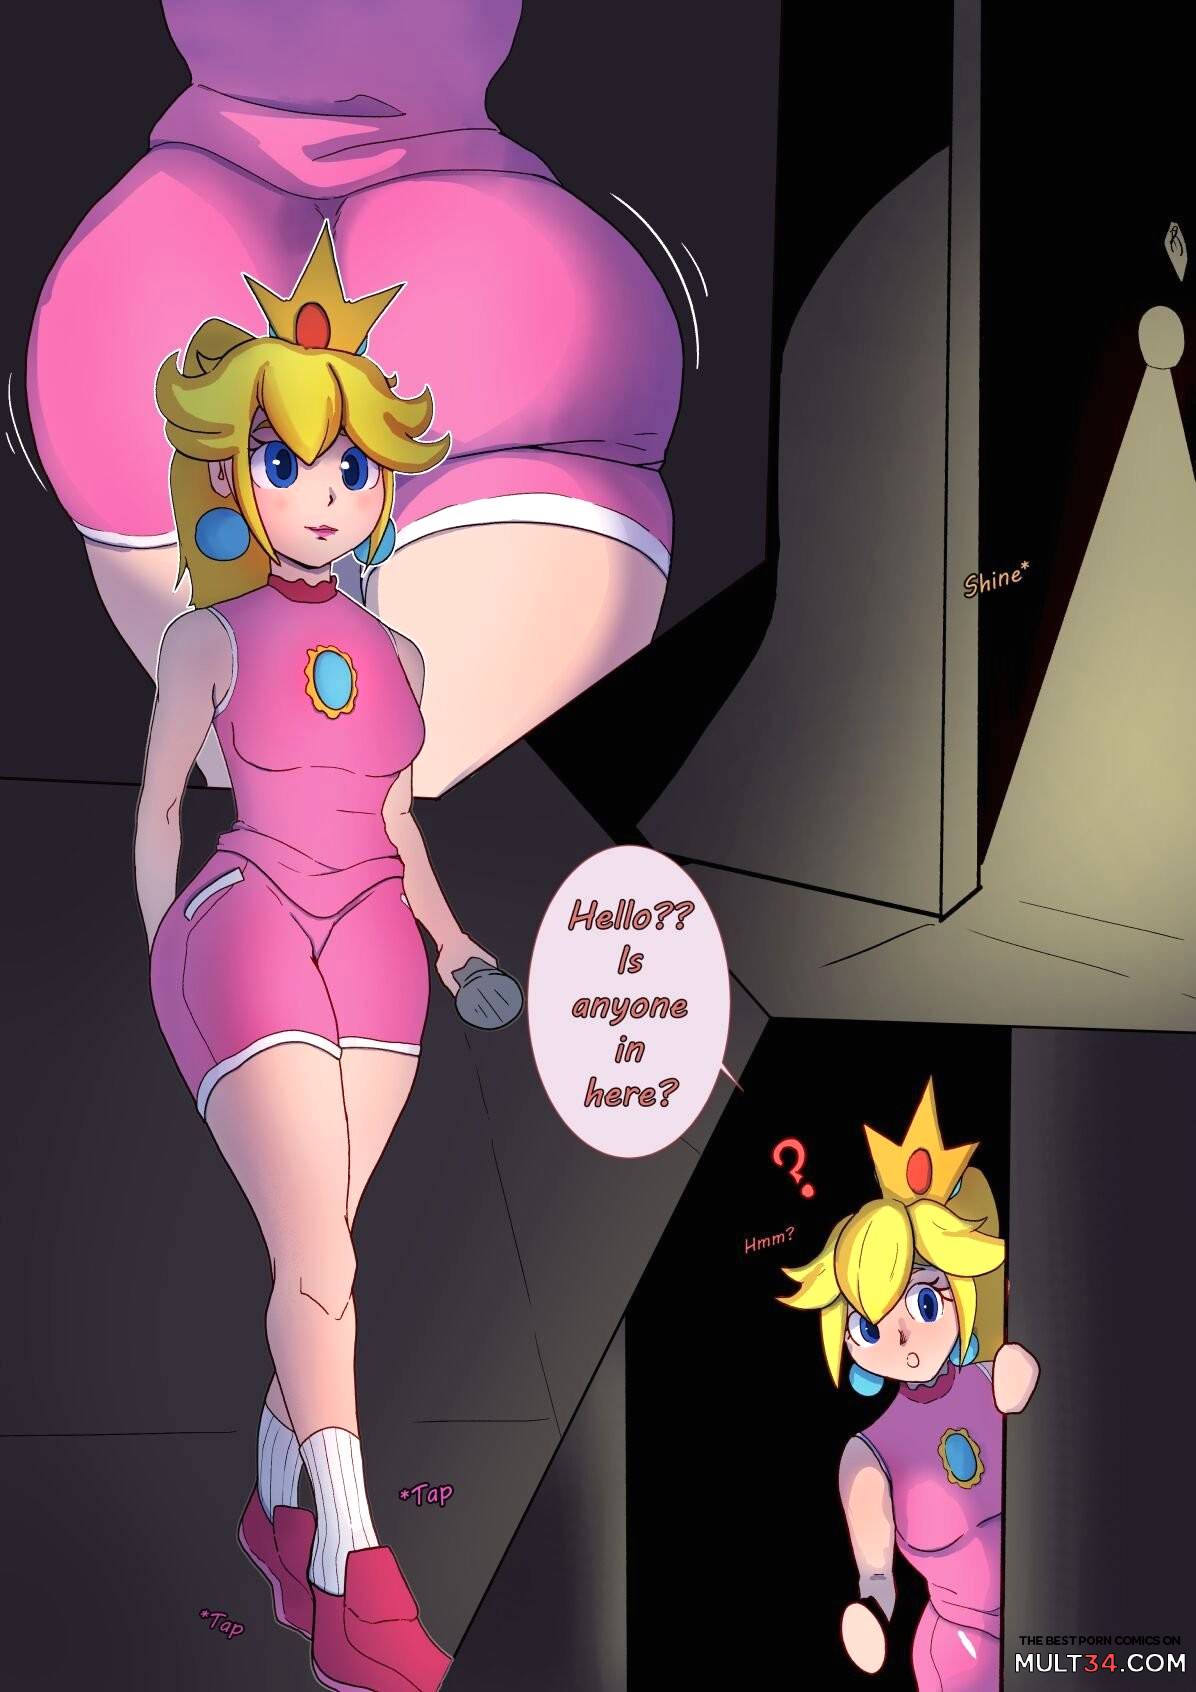 X Ray Hentai Princess Peach Porn - Peaches porn comic - the best cartoon porn comics, Rule 34 | MULT34